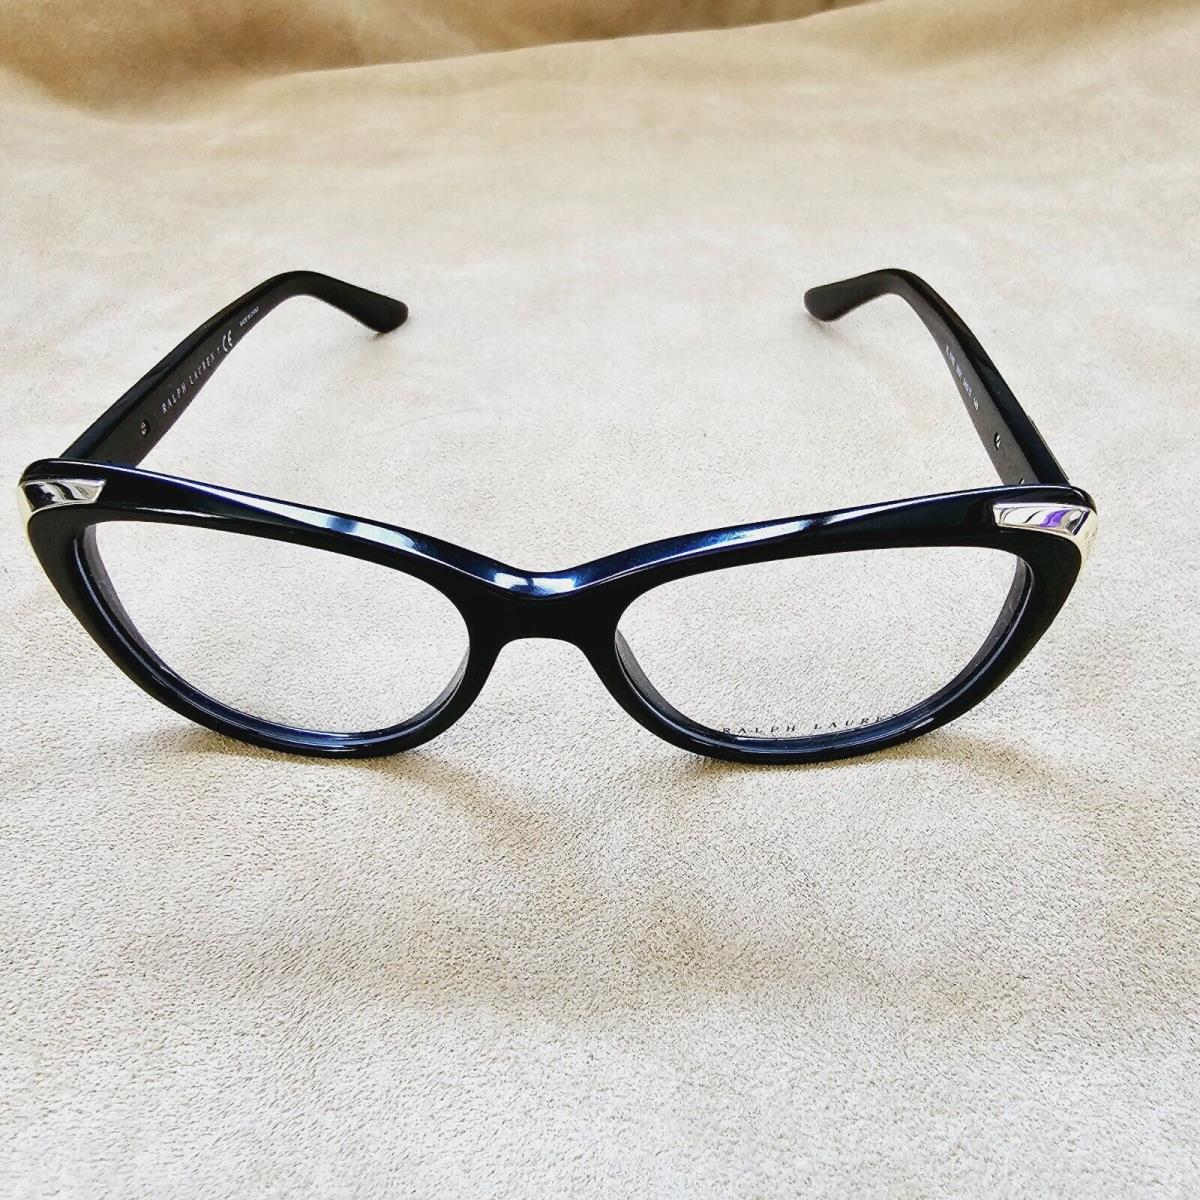 Ralph Lauren eyeglasses  - Shiny Black/Demo Lens , Shiny Black on Crystal/Demo Lens Frame 0